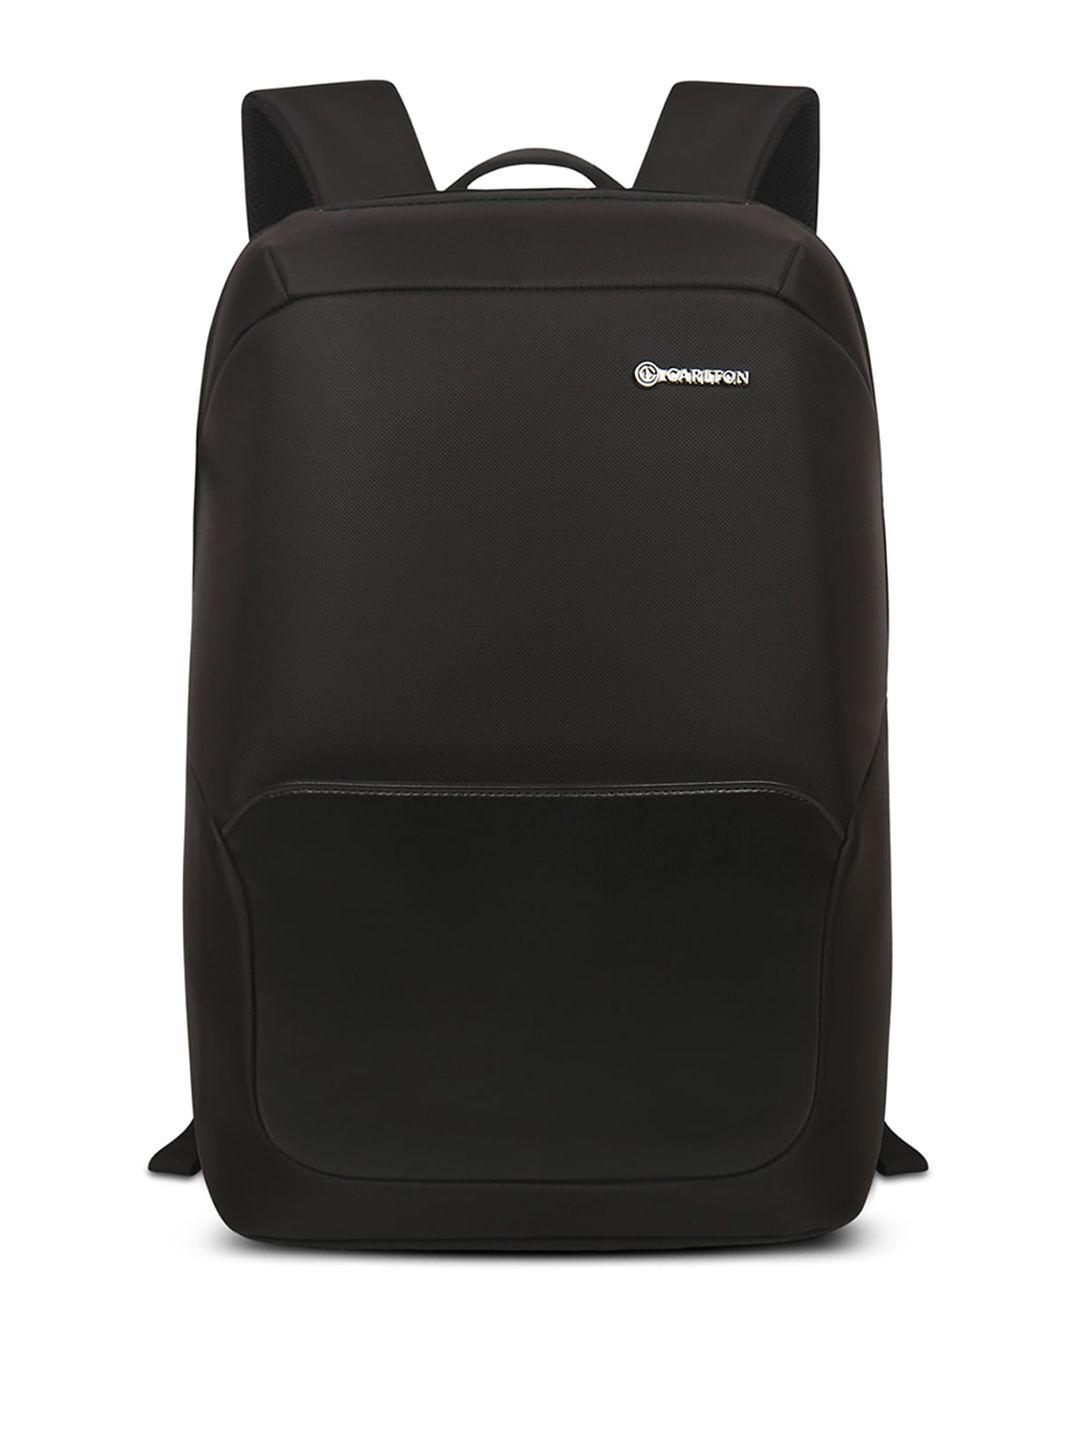 carlton unisex ergonomic backpack-up to 16 inch